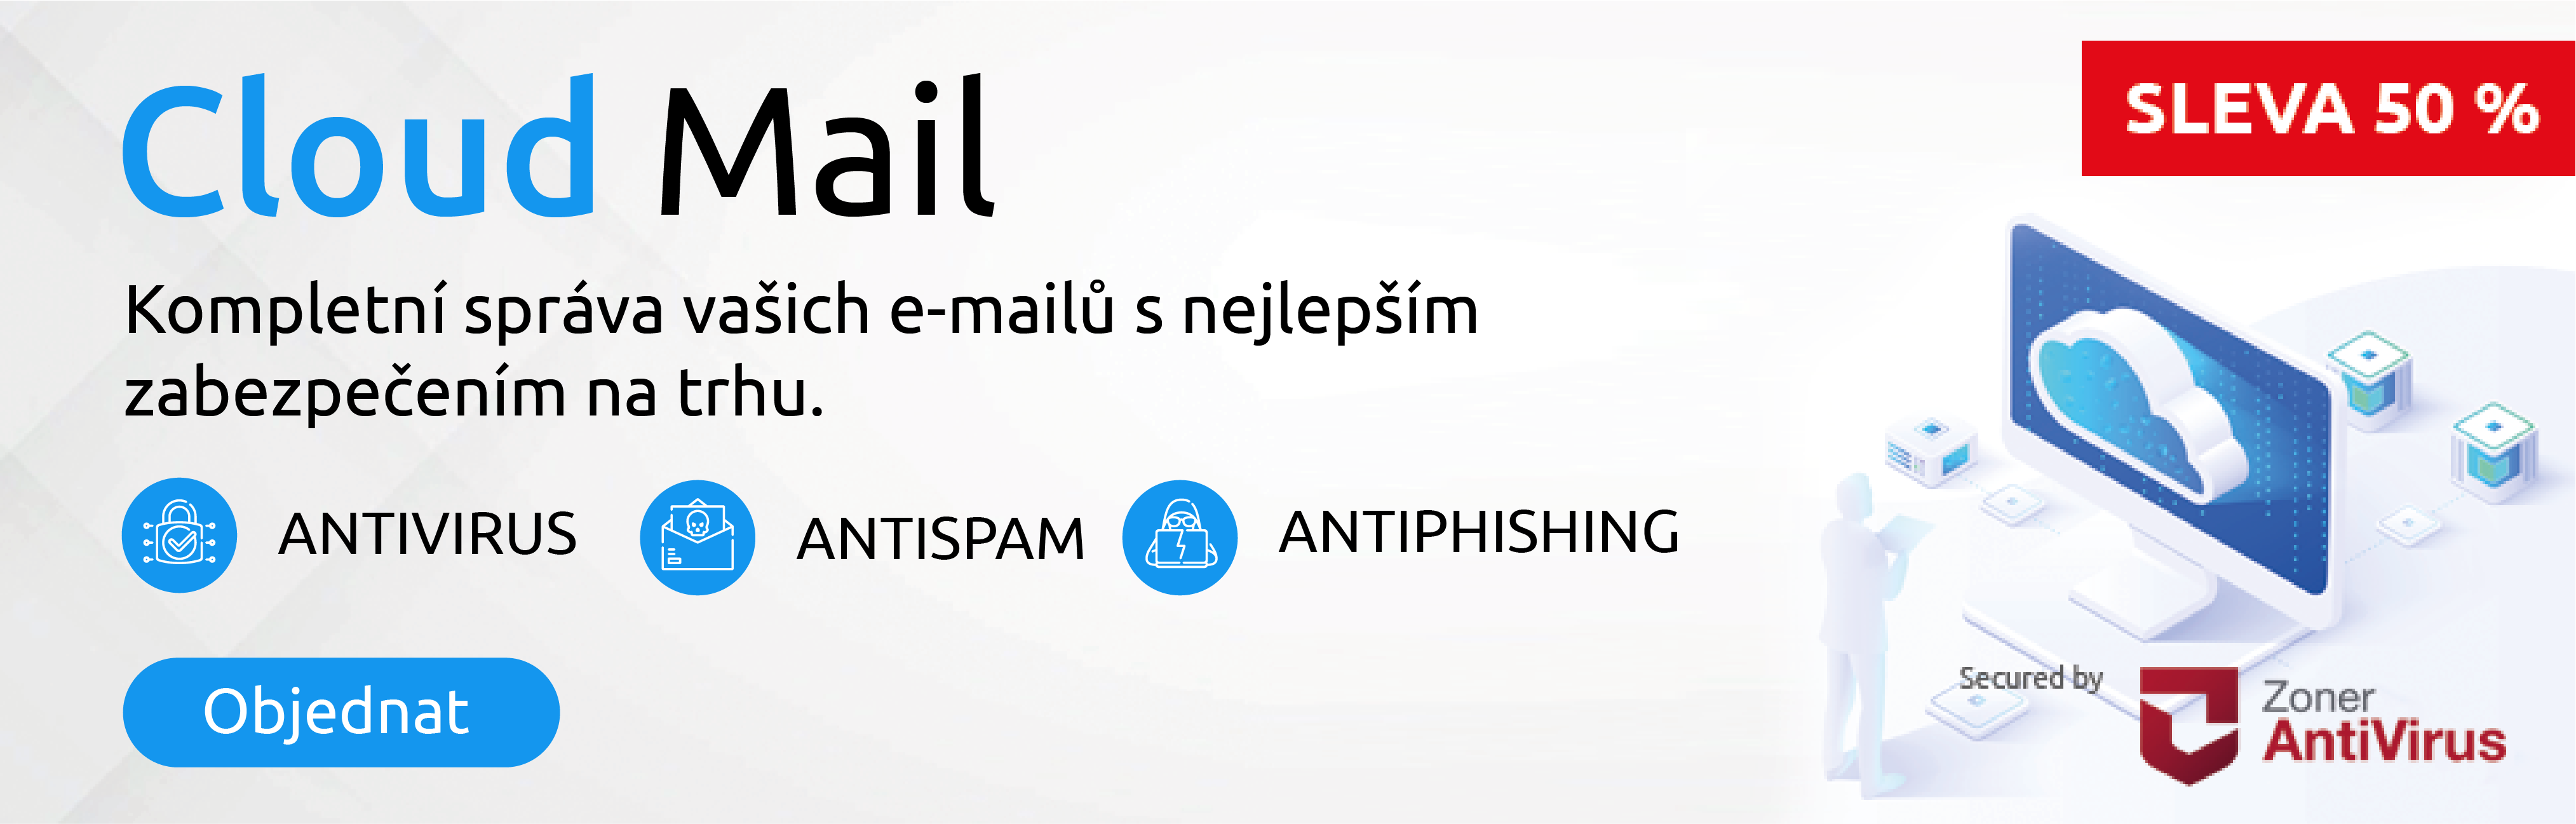 Vyzkoušejte e-mailovou službu Cloud Mail